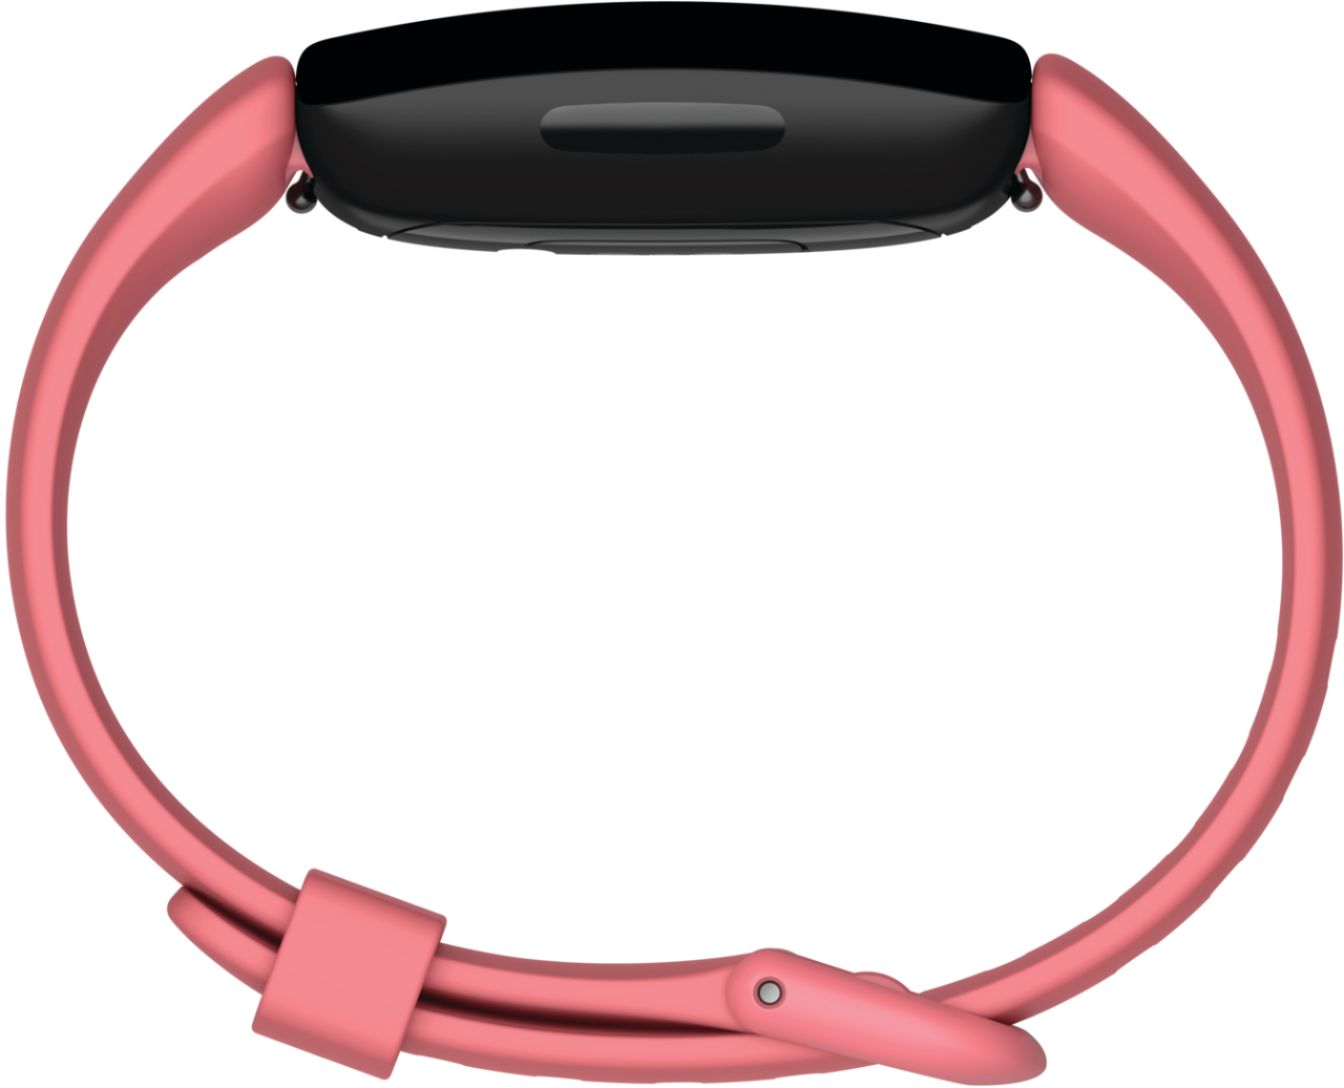 Fitbit - Inspire 2 Fitness Tracker - Desert Rose